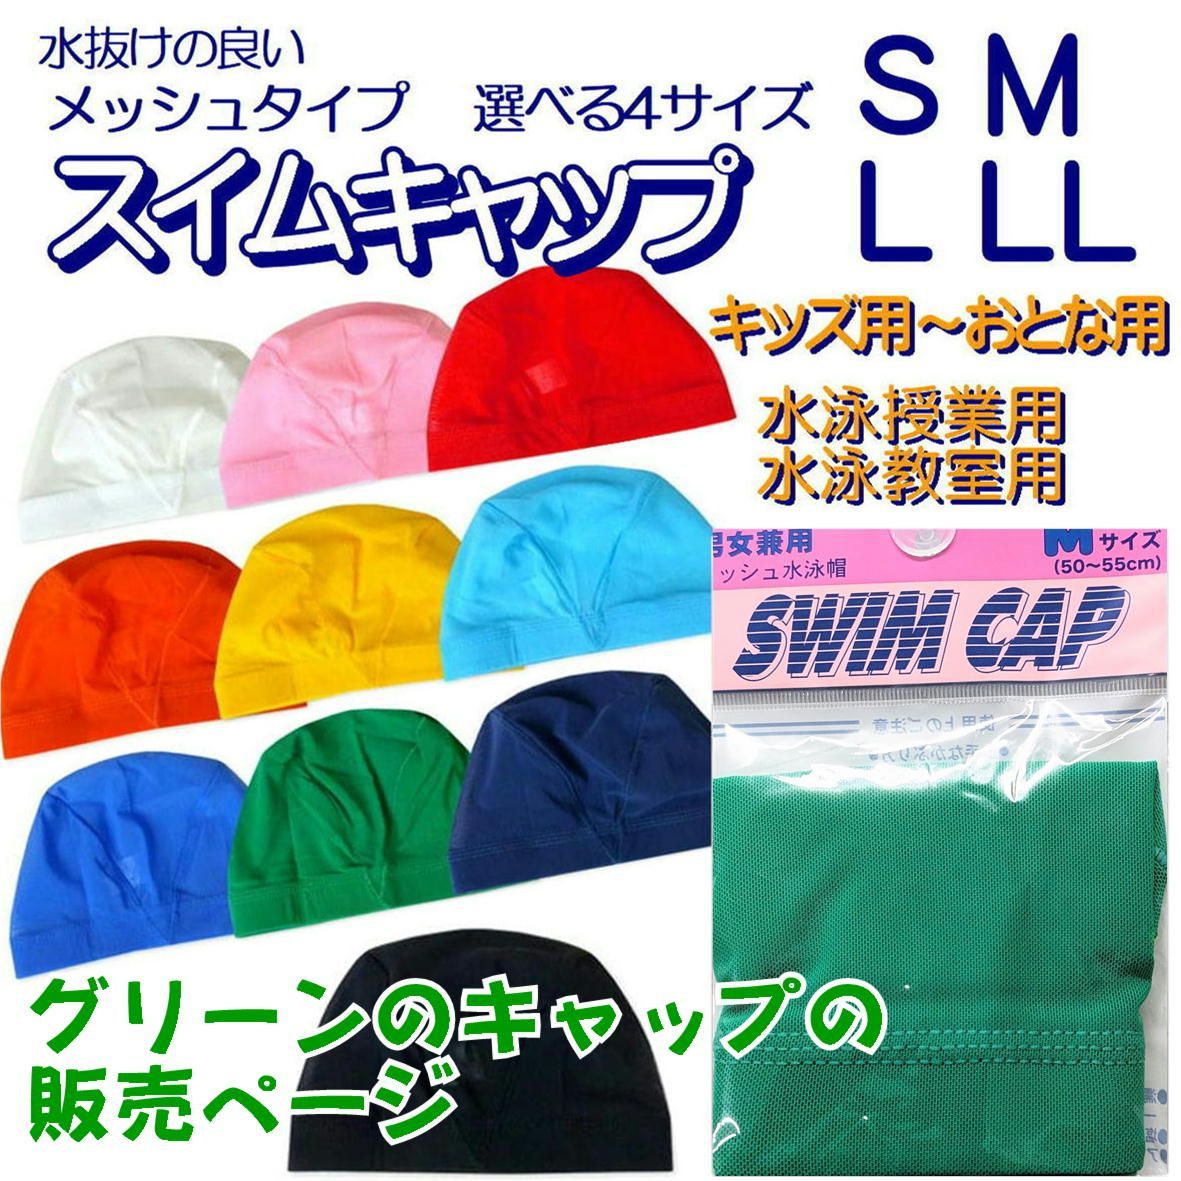 スイムキャップ メッシュ 水泳帽 水泳帽子 【グリーン 選べる4サイズ